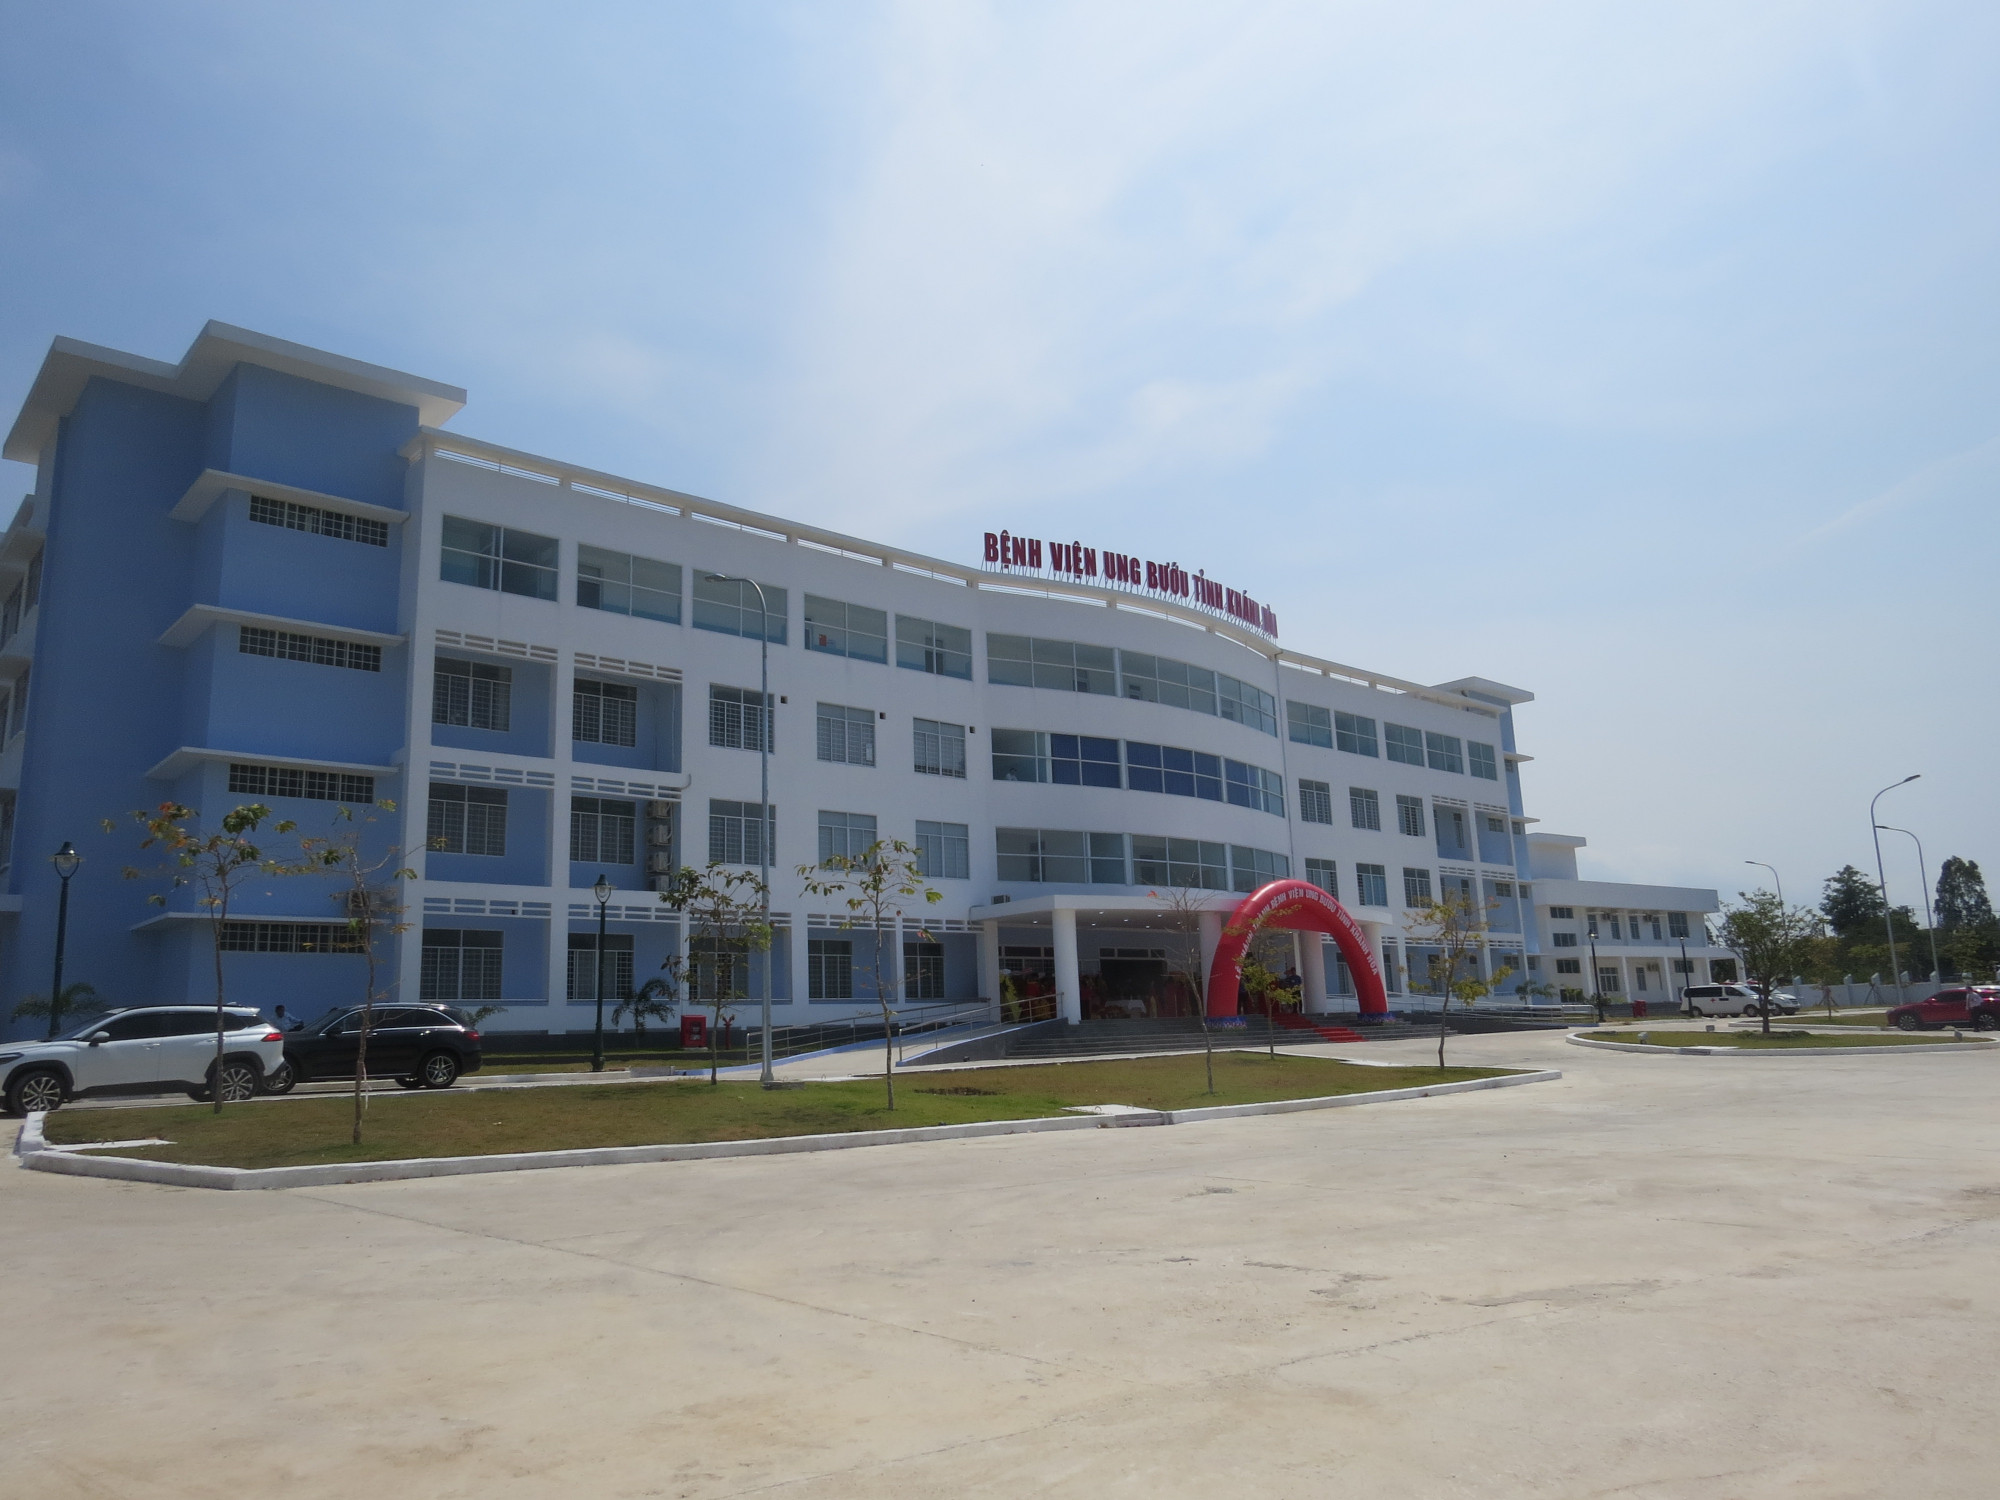 Bệnh viện Ung bướu tỉnh Khánh Hòa tại phường Vĩnh Hải, TP Nha Trang, tỉnh Khánh Hòa